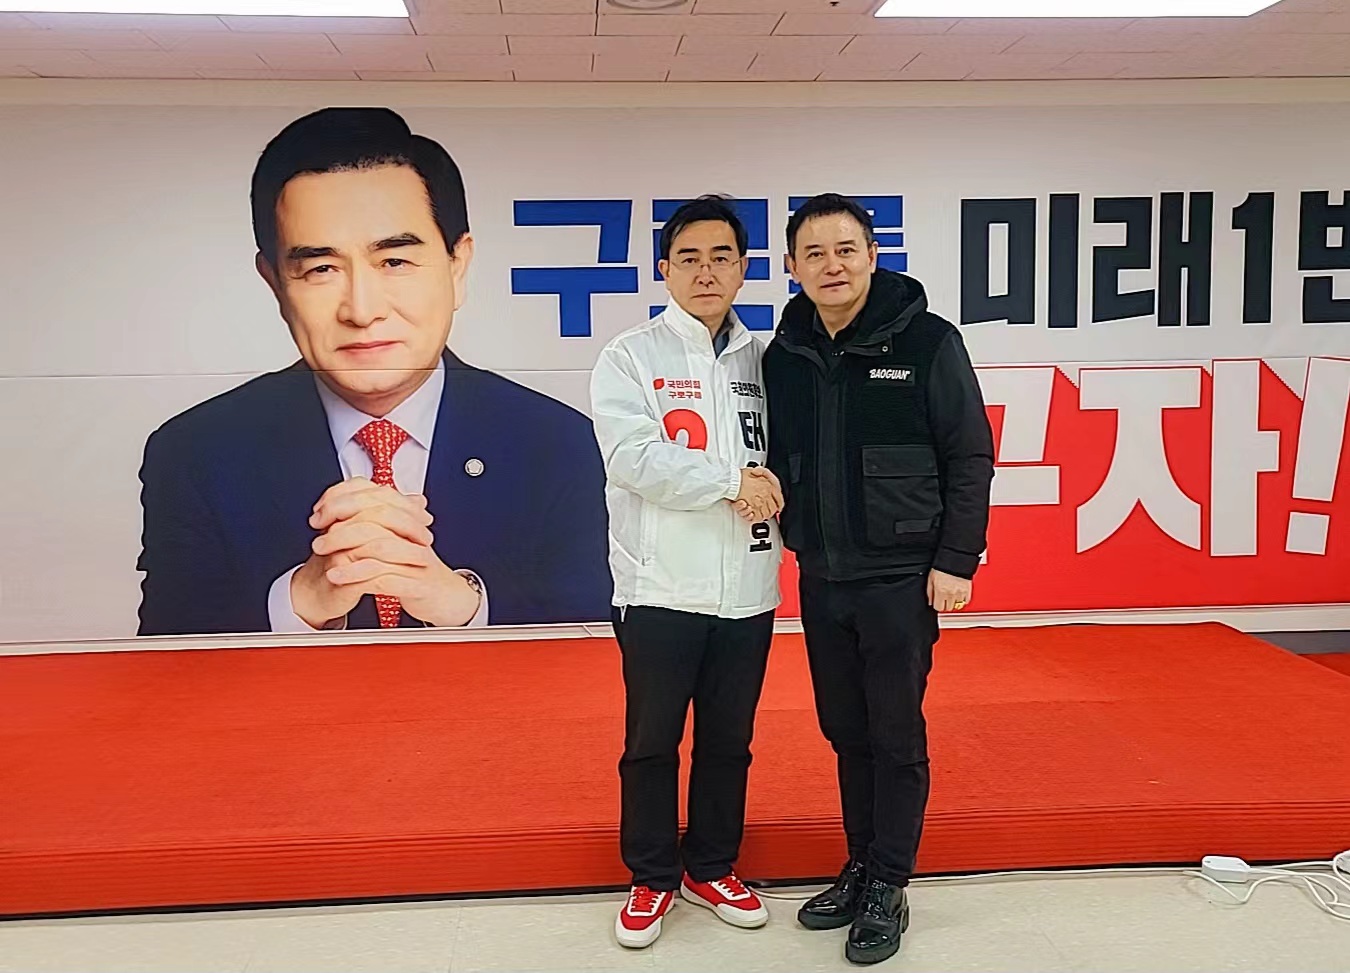 太永浩议员以后补身份再度竞选议员并承诺愿为在韩同胞解决实际问题